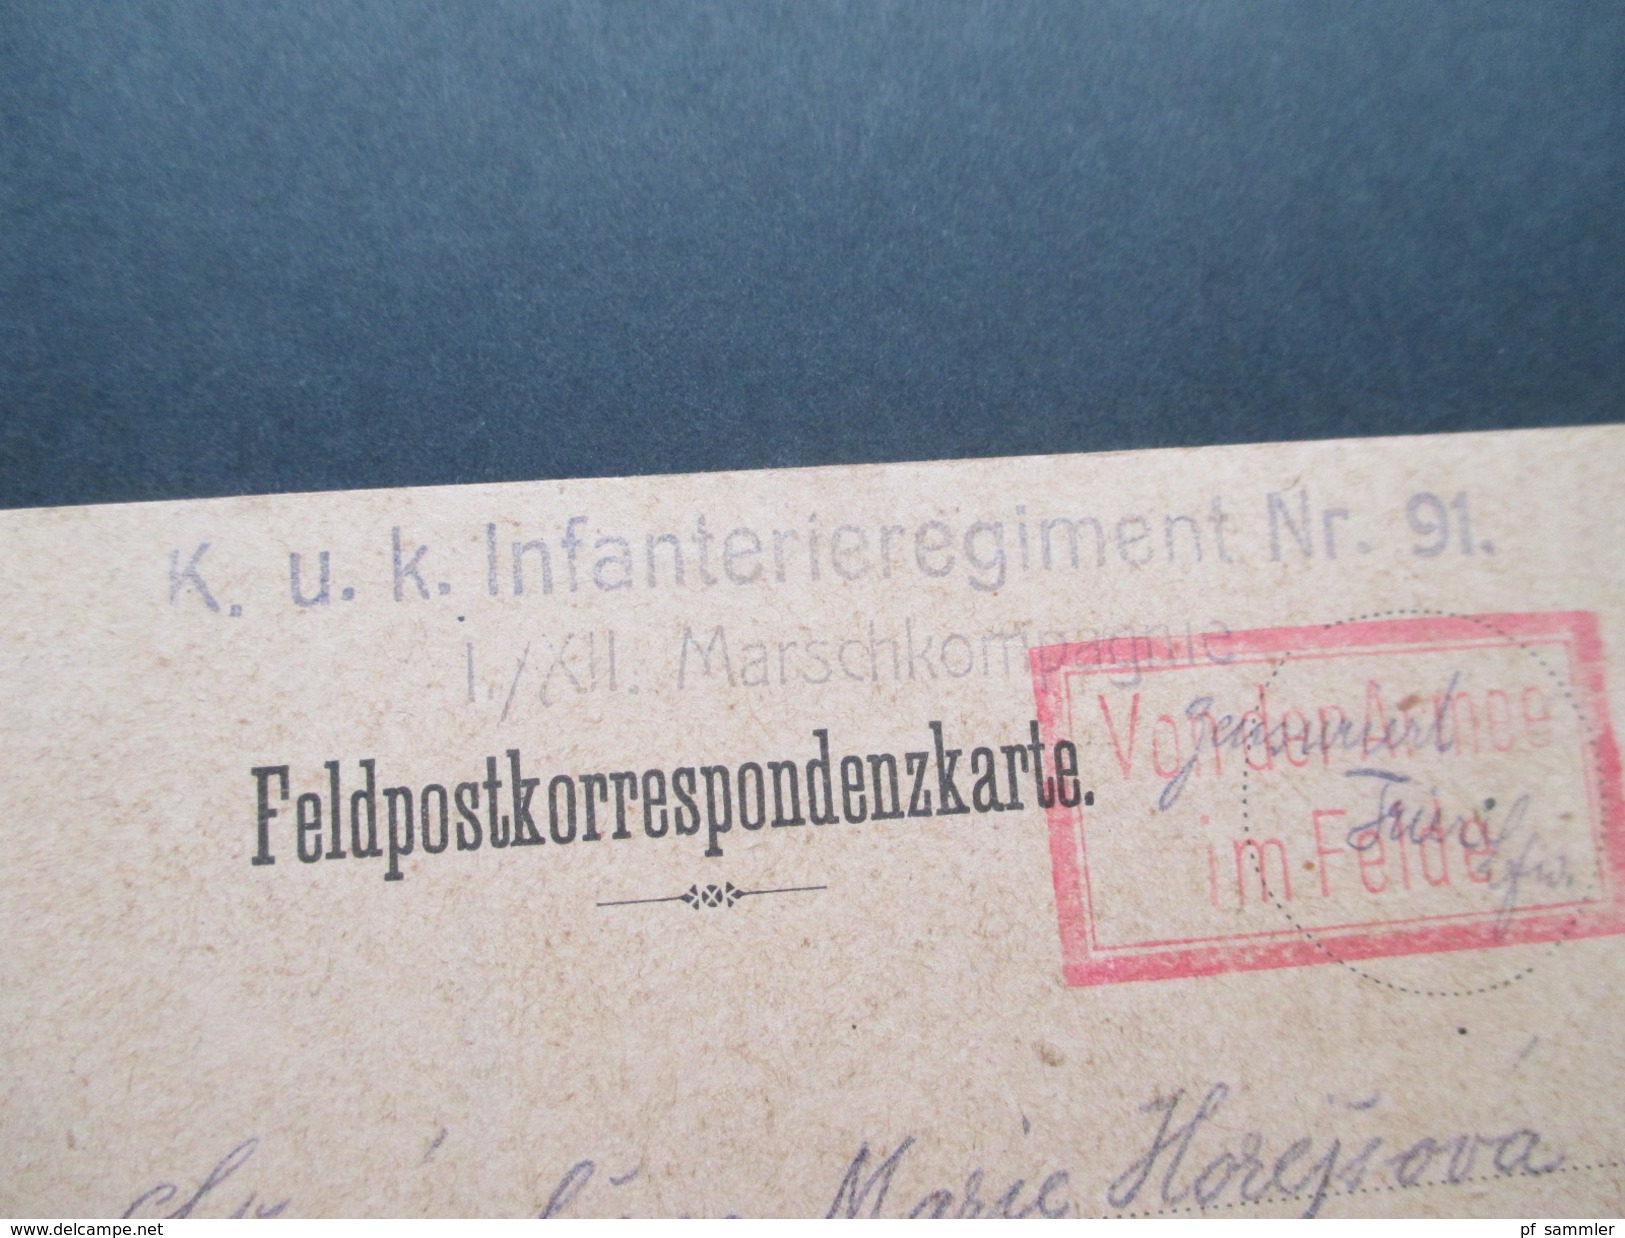 Österreich Feldpostkarte Von Der Armee Im Felde. KuK Infanterieregiment Nr. 91 I./XII Marschkompagnie. Zensuriert - Briefe U. Dokumente